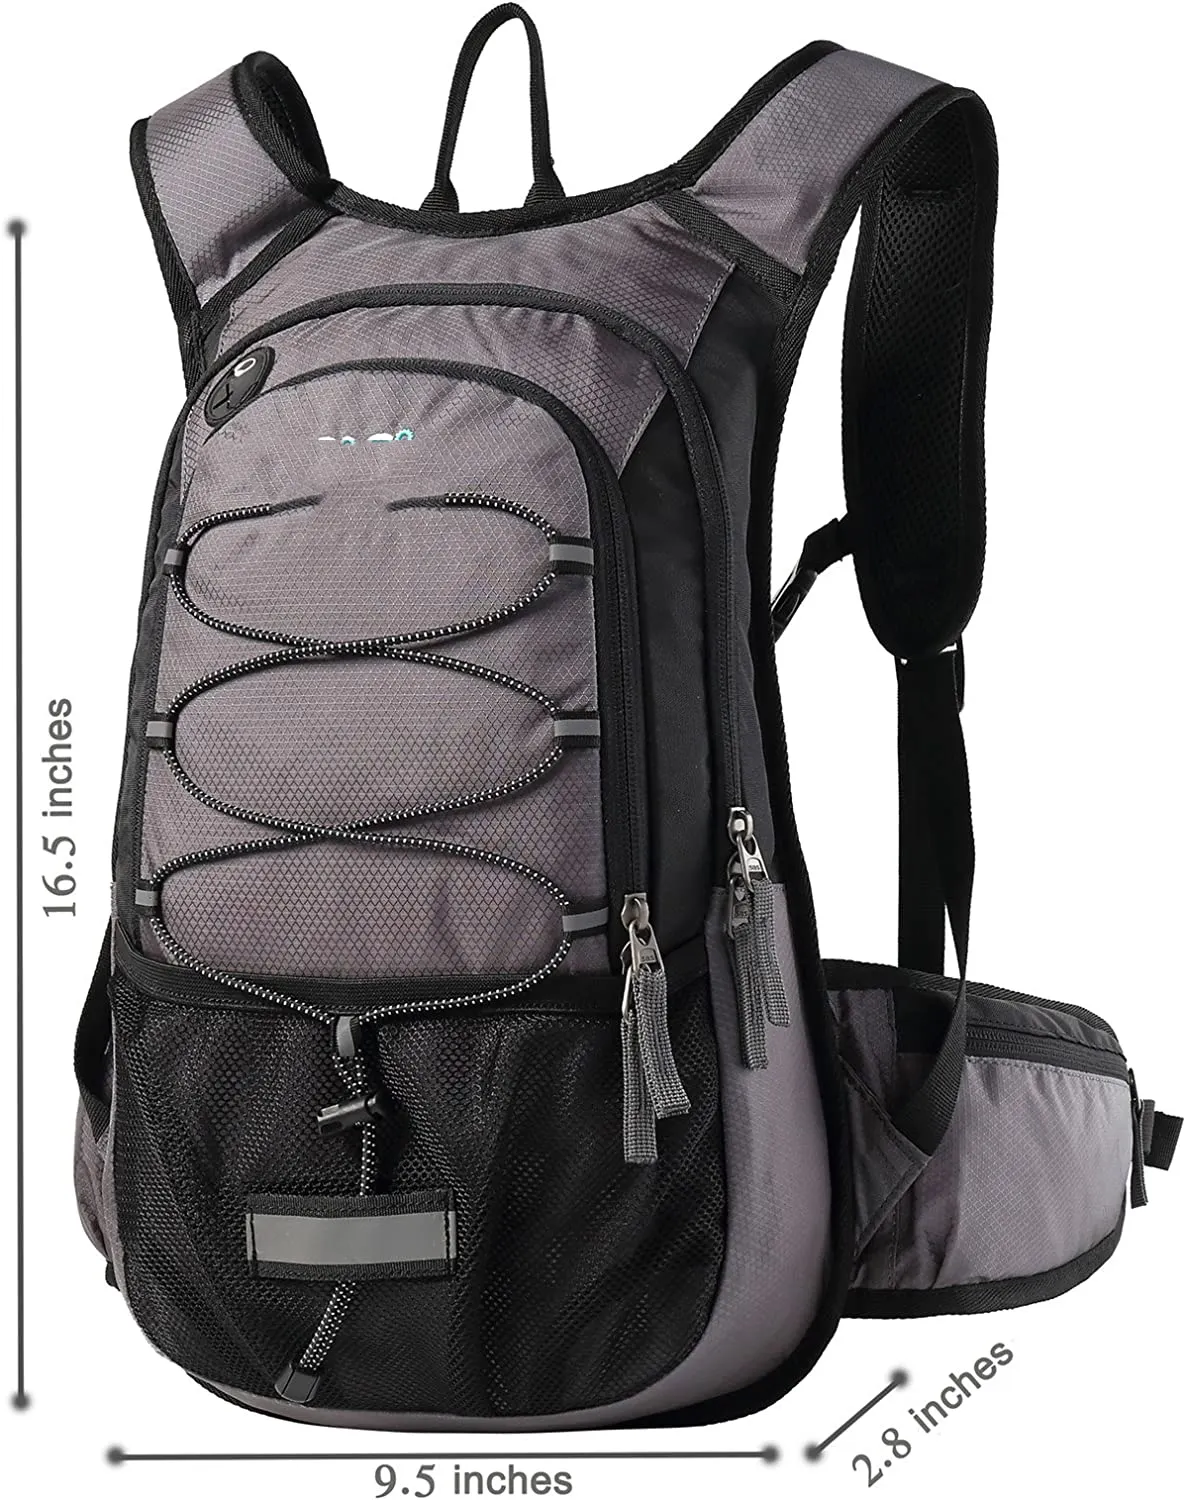 Isolierter Trink rucksack mit 2L BPA-freier Blase zum Laufen, Wandern, Radfahren, Camping